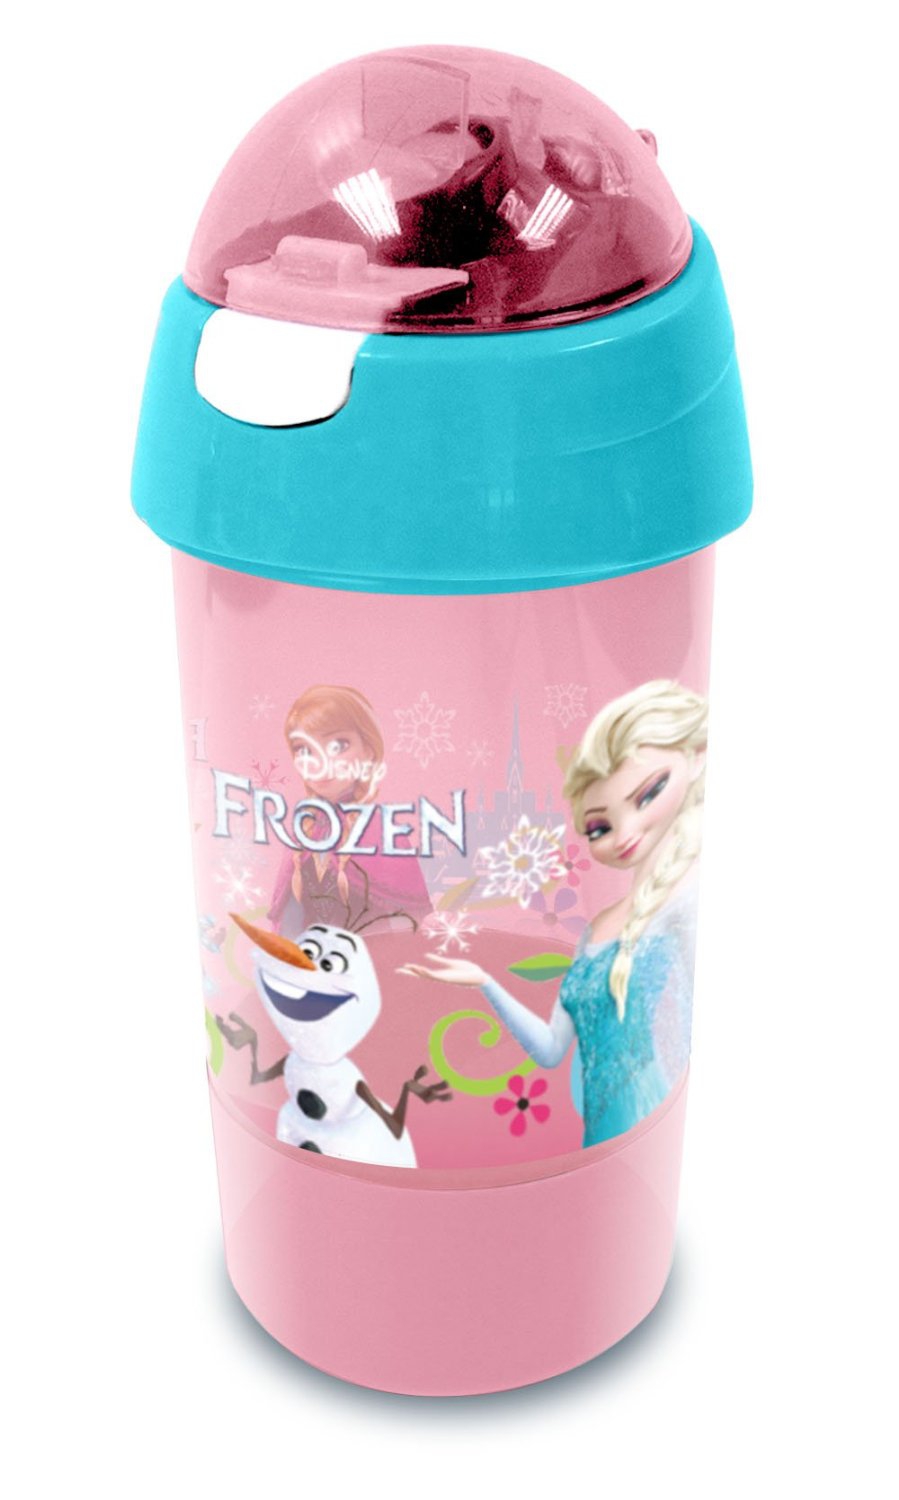 Disney Frozen Elsa & Anna 'Follow Your Heart' Sip N Snack Bottle Pot 2 In 1